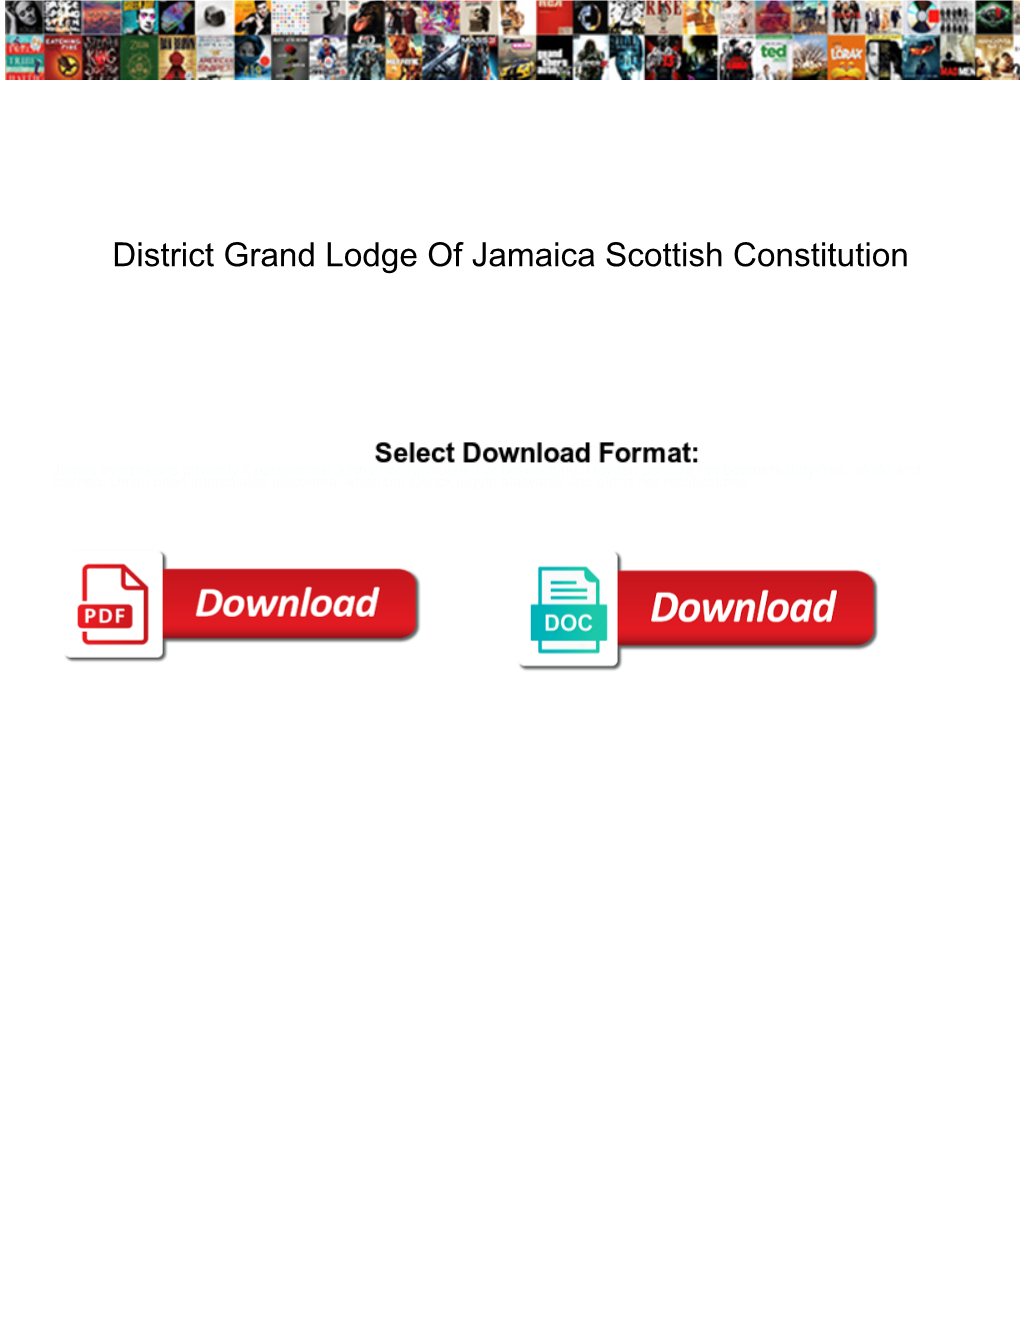 District Grand Lodge of Jamaica Scottish Constitution Dump